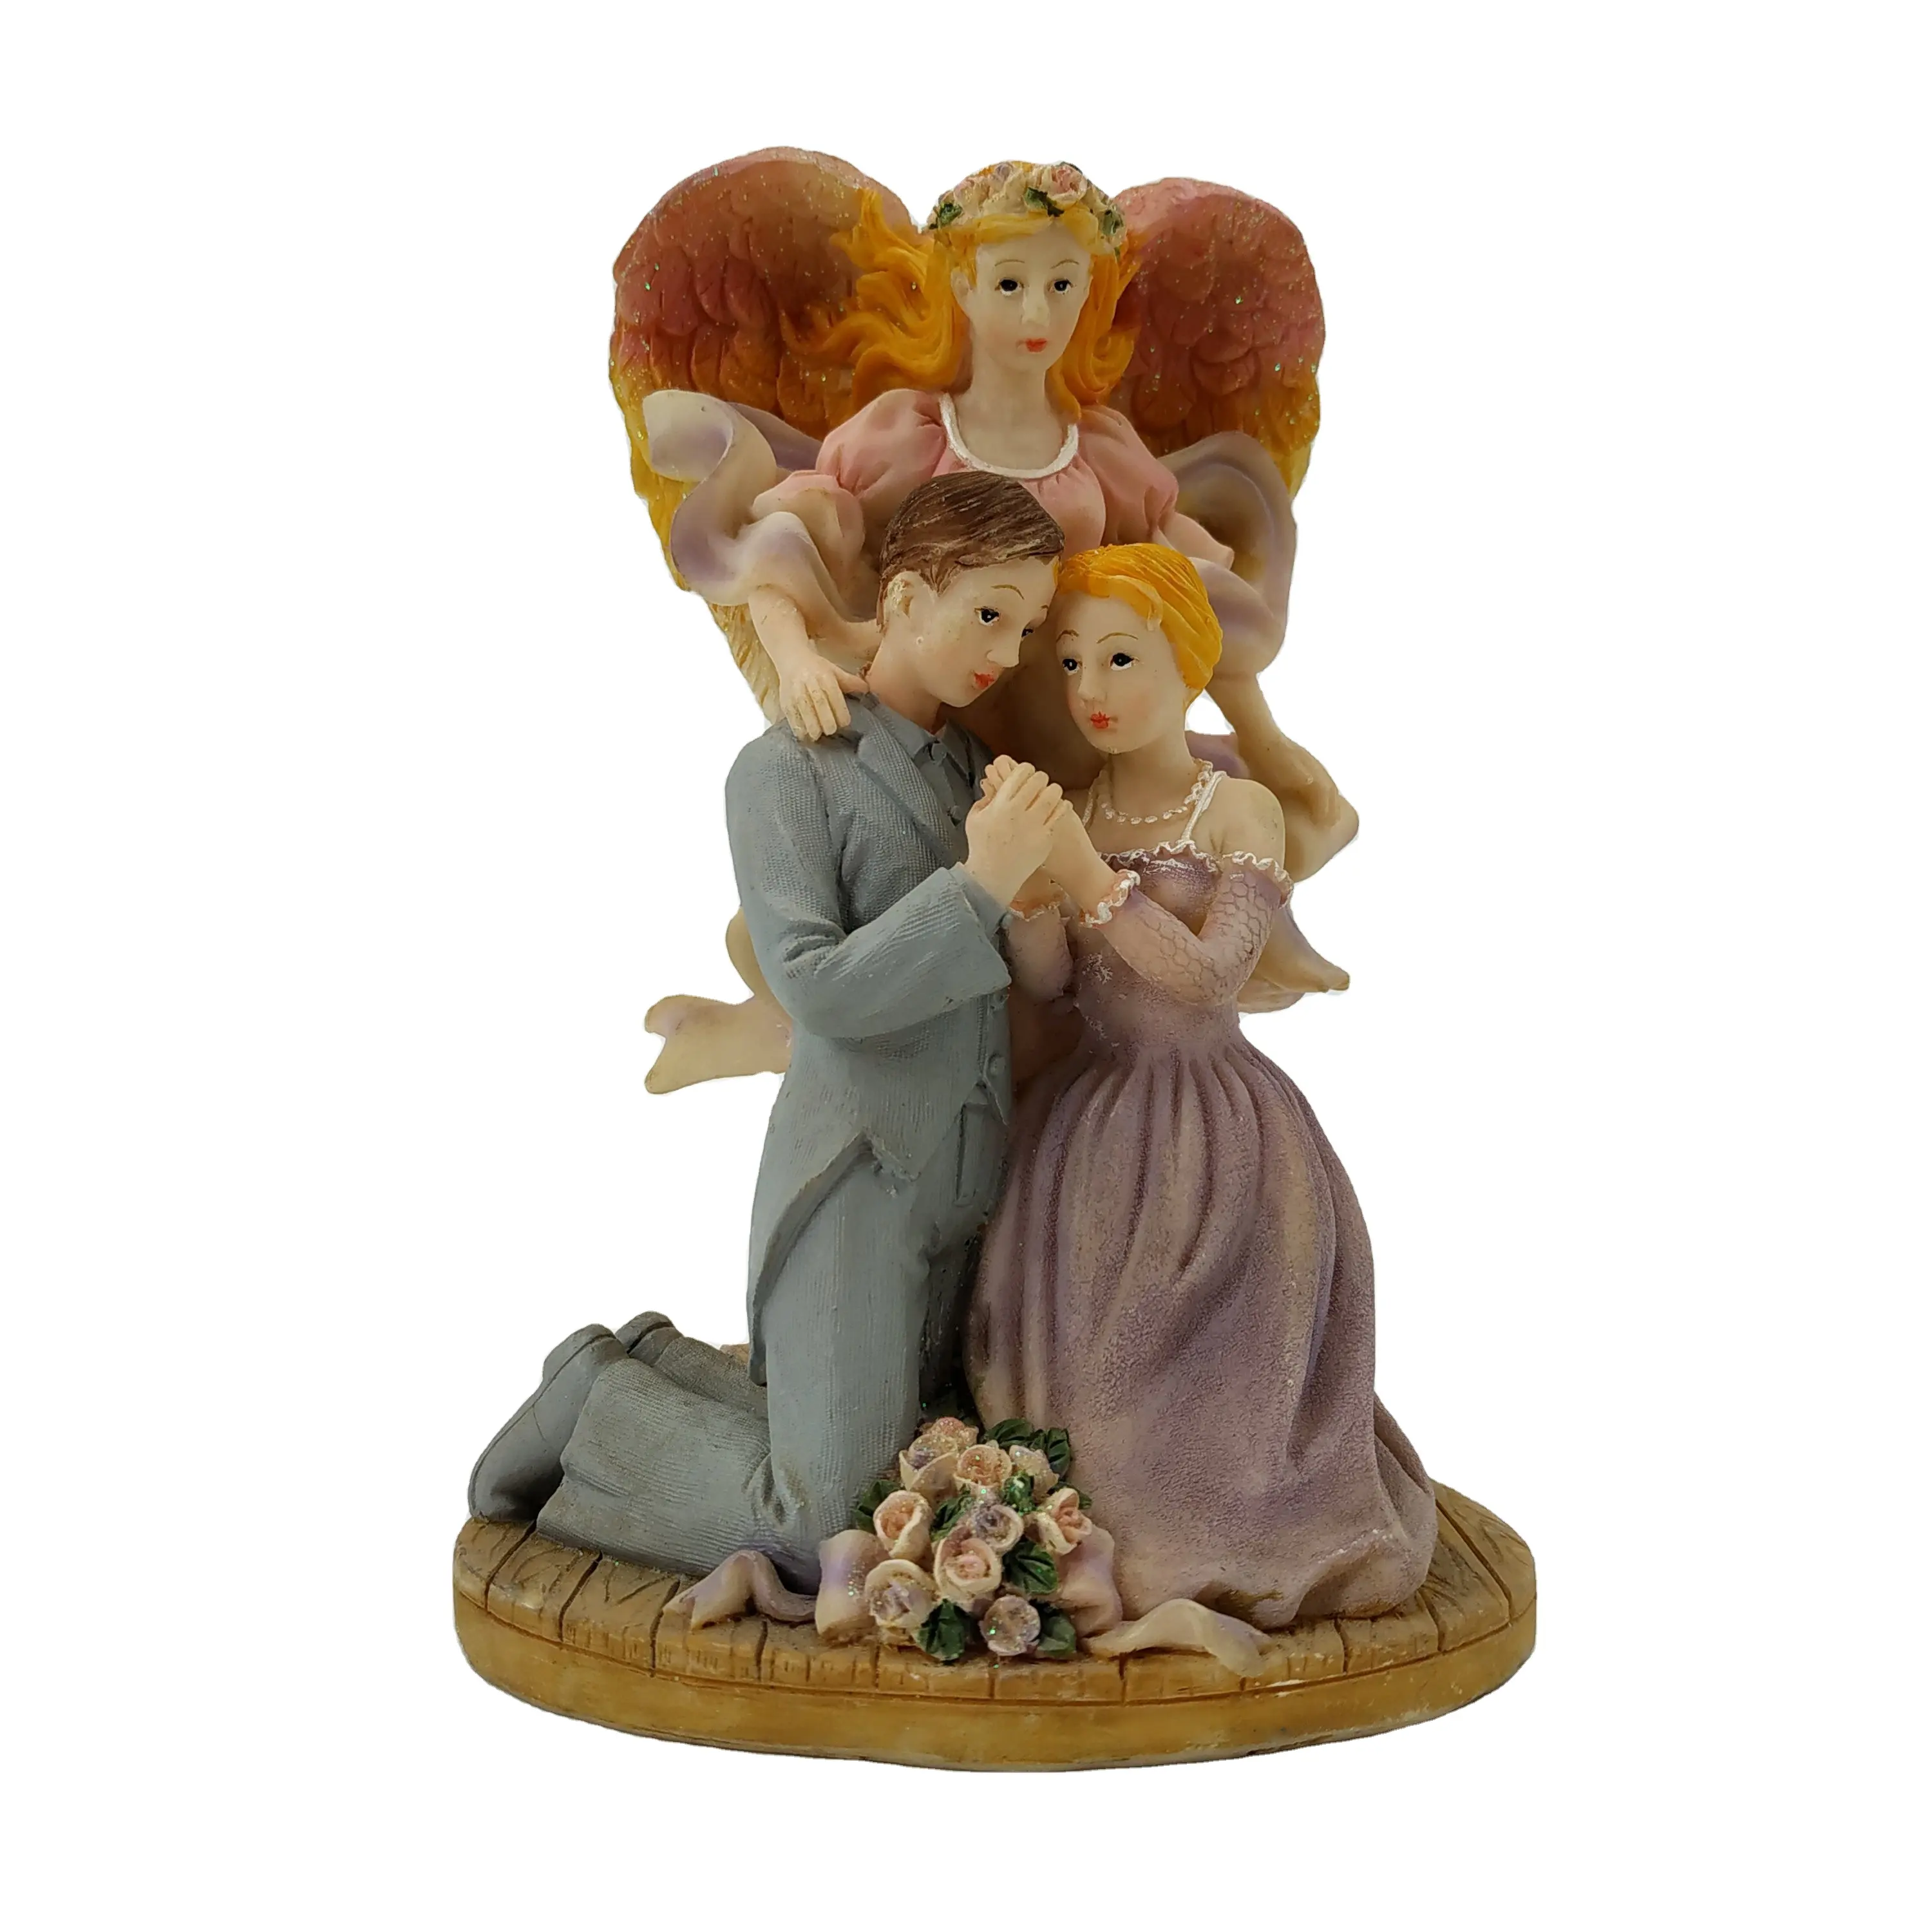 Polyresin melek nimet heykeli düğün hediyesi öğeleri ev dekor için